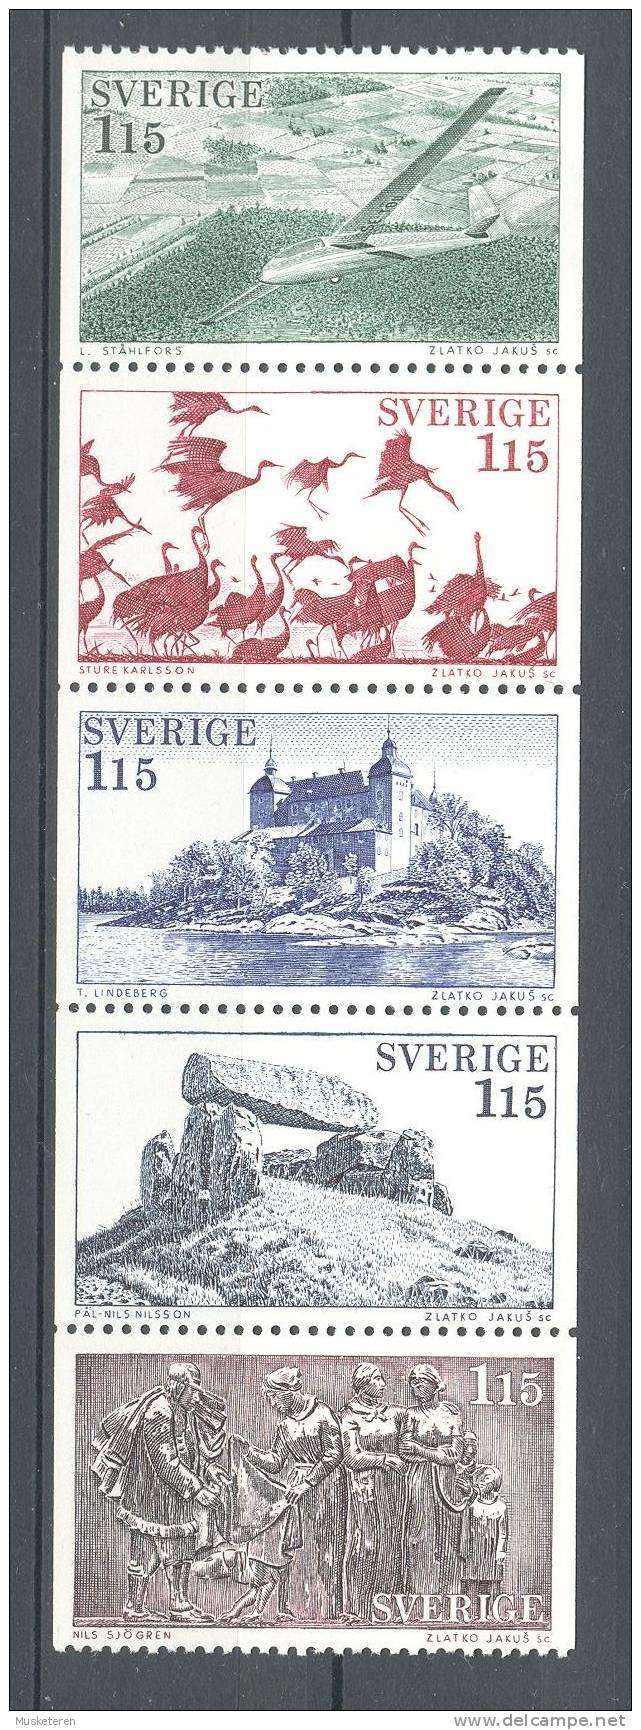 Sweden 1978 Zusammendruck MH-MiNr. 68 (Mi. 1028-32)  1.15 Kr Tourism Tourismus - Västergötland 5-Stripe MNH** - Neufs